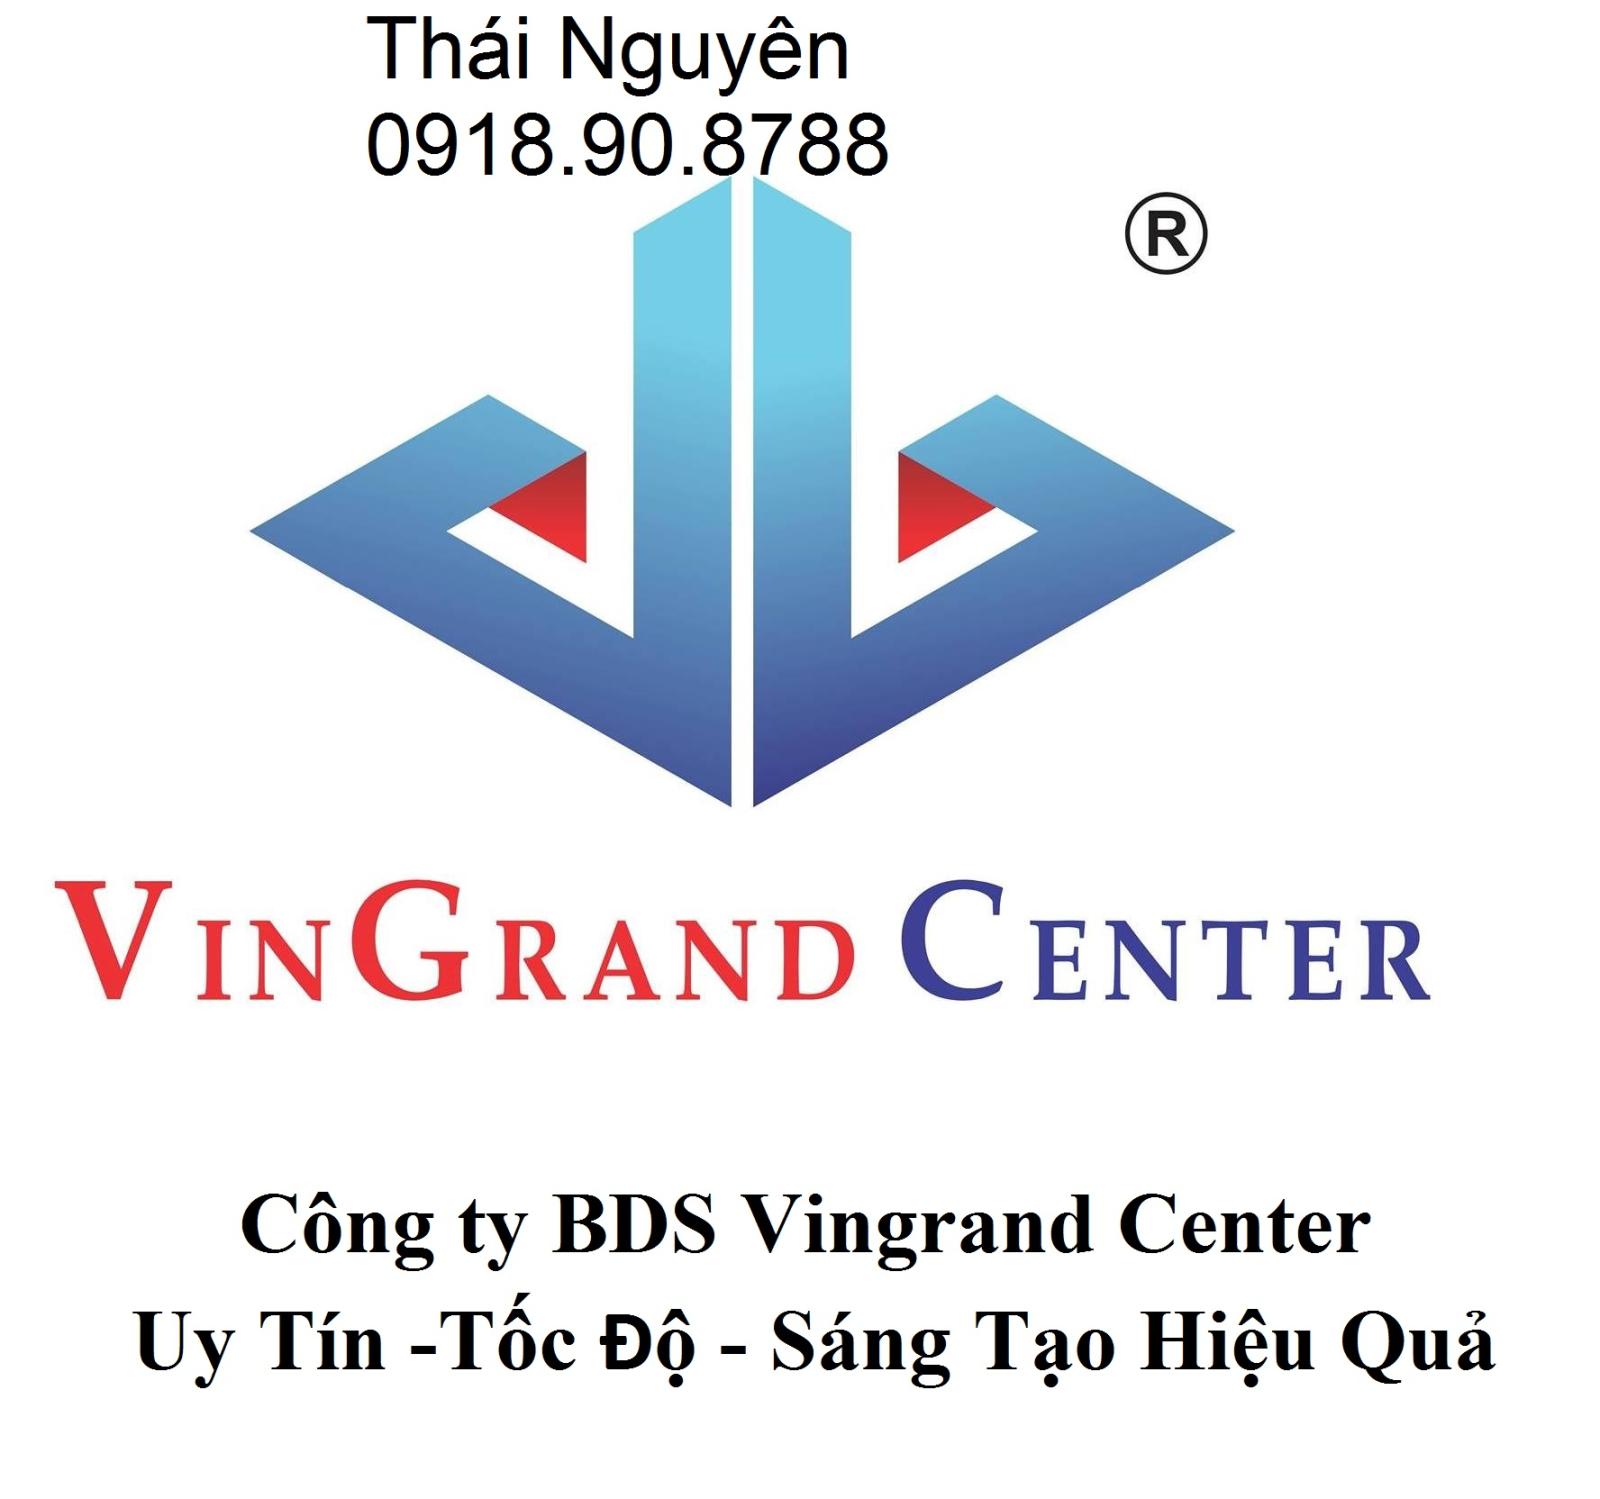 Cần bán gấp căn biệt thự hẻm 42 siêu vip Nguyễn Minh Hoàng, K300 Q. Tân Bình, DT: 10x18m, 2 lầu, ST